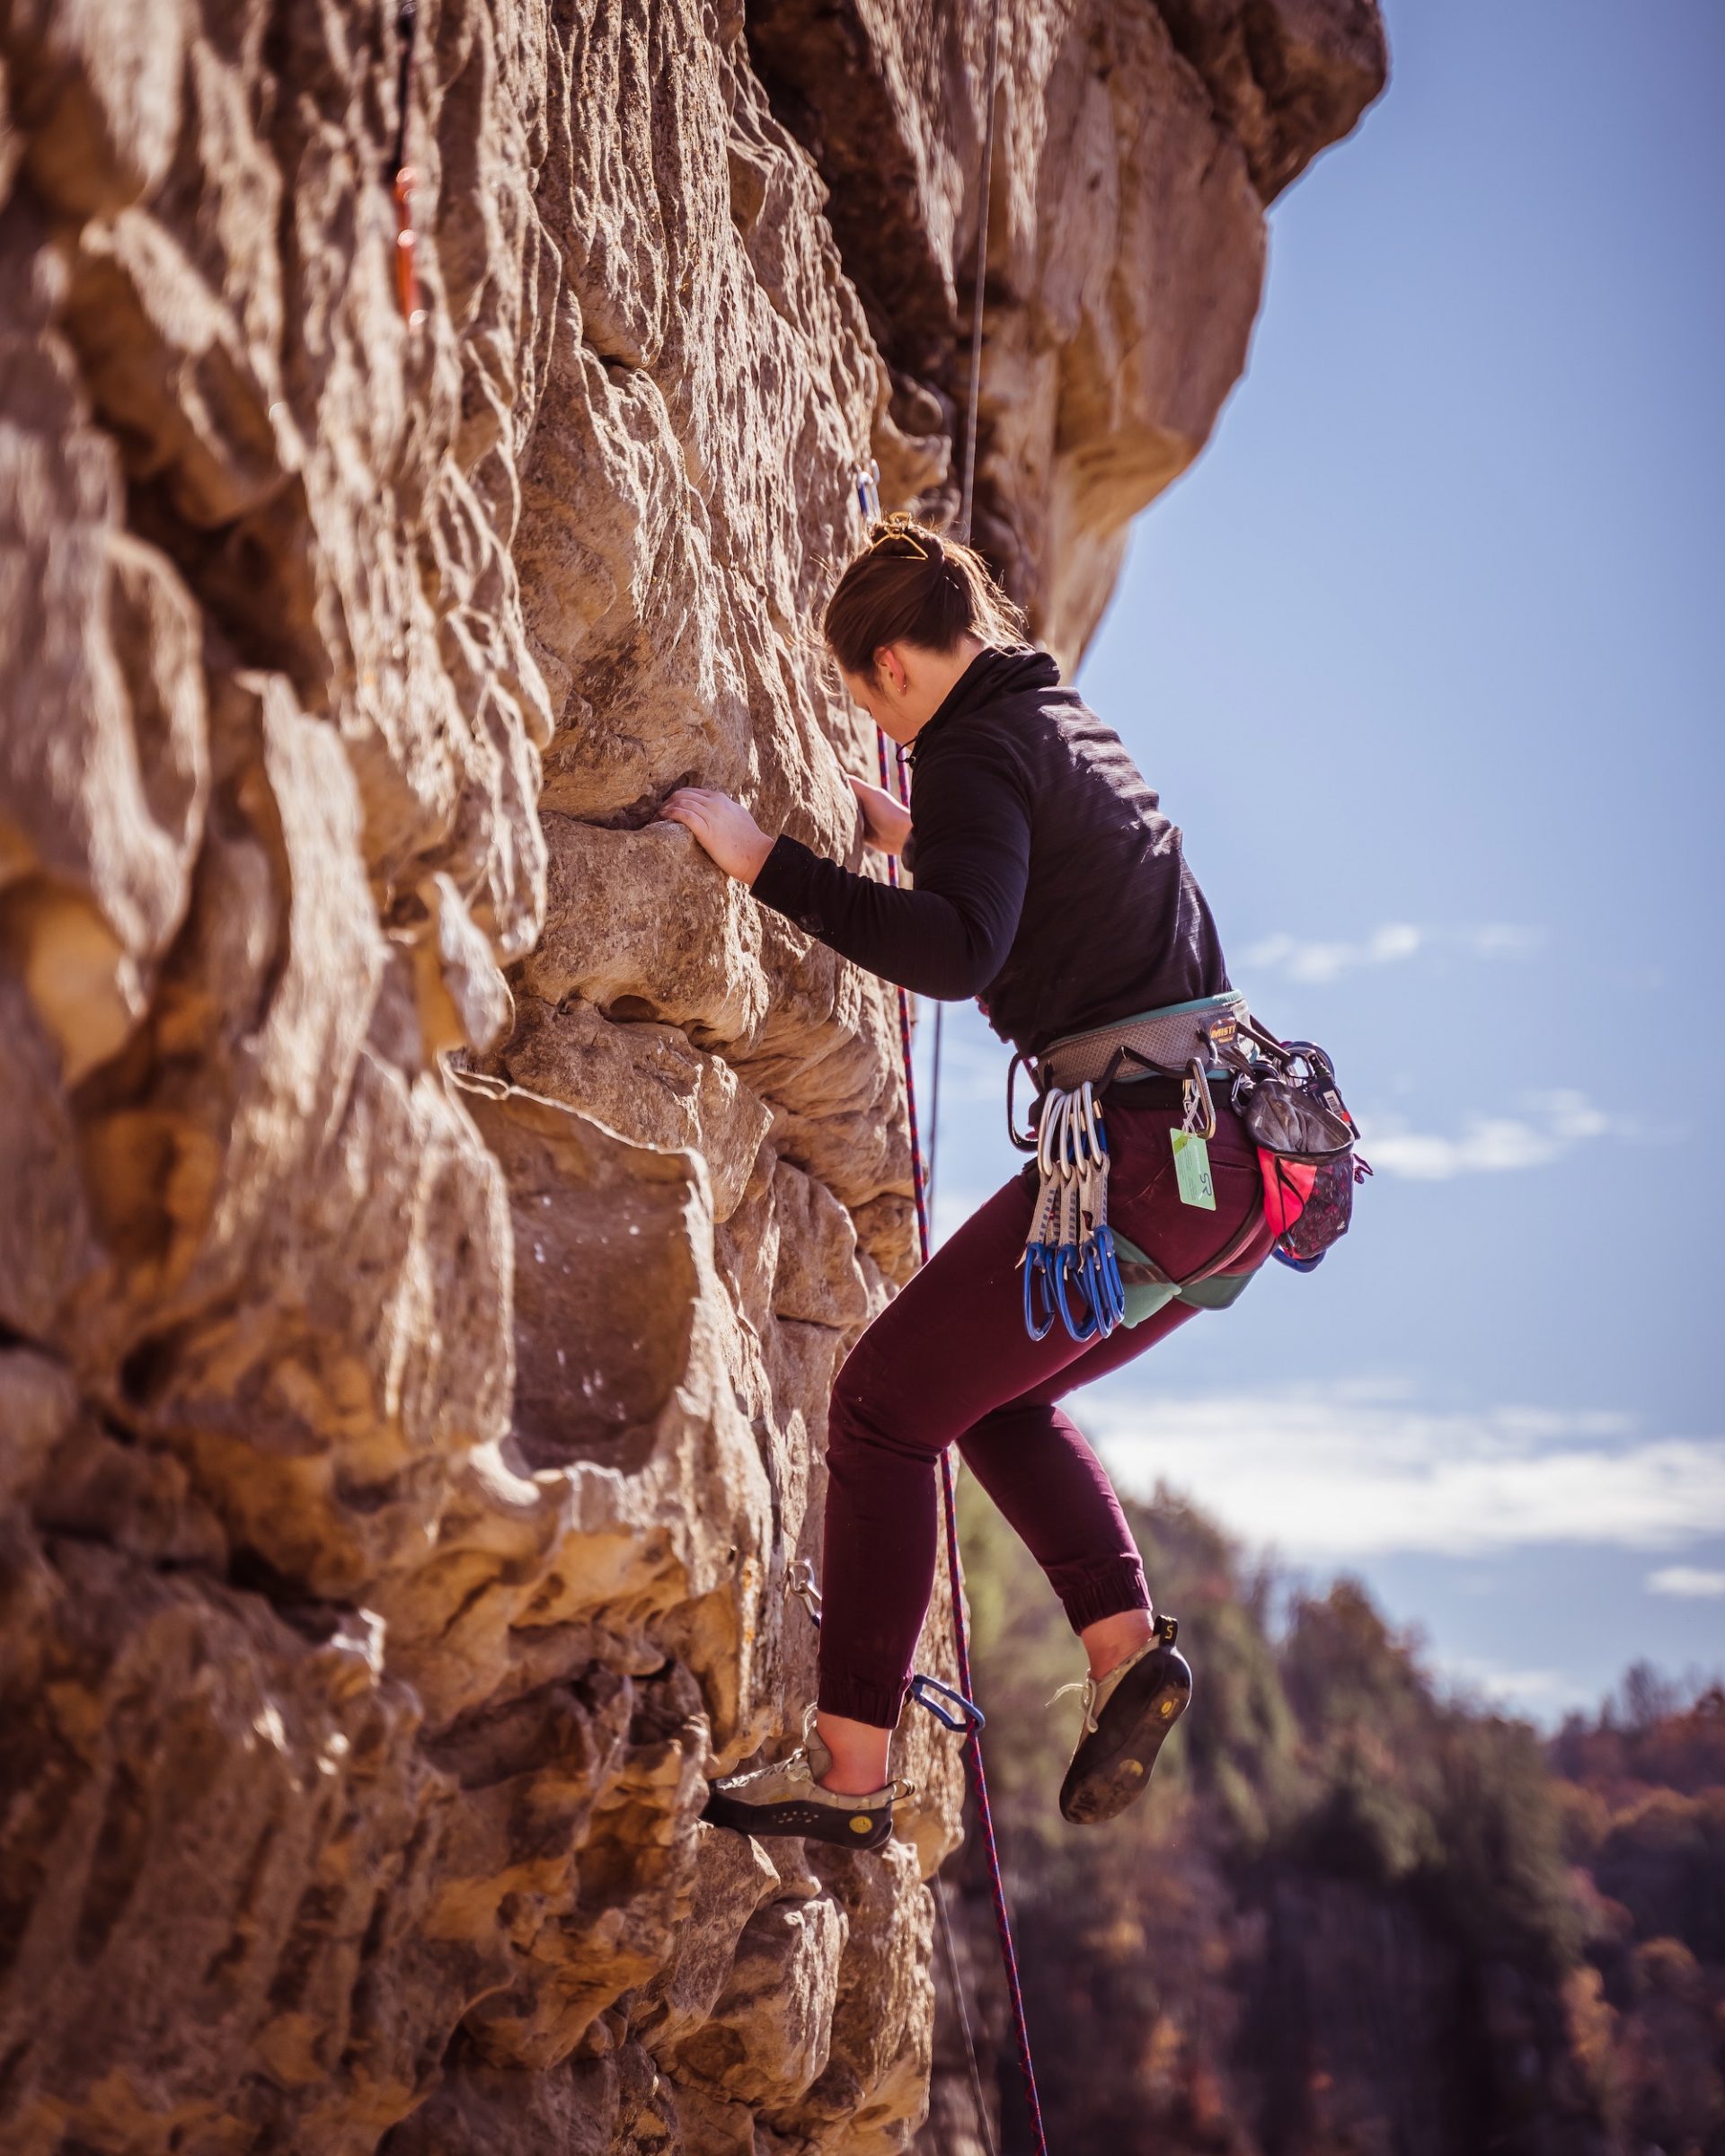 dating a rock climber